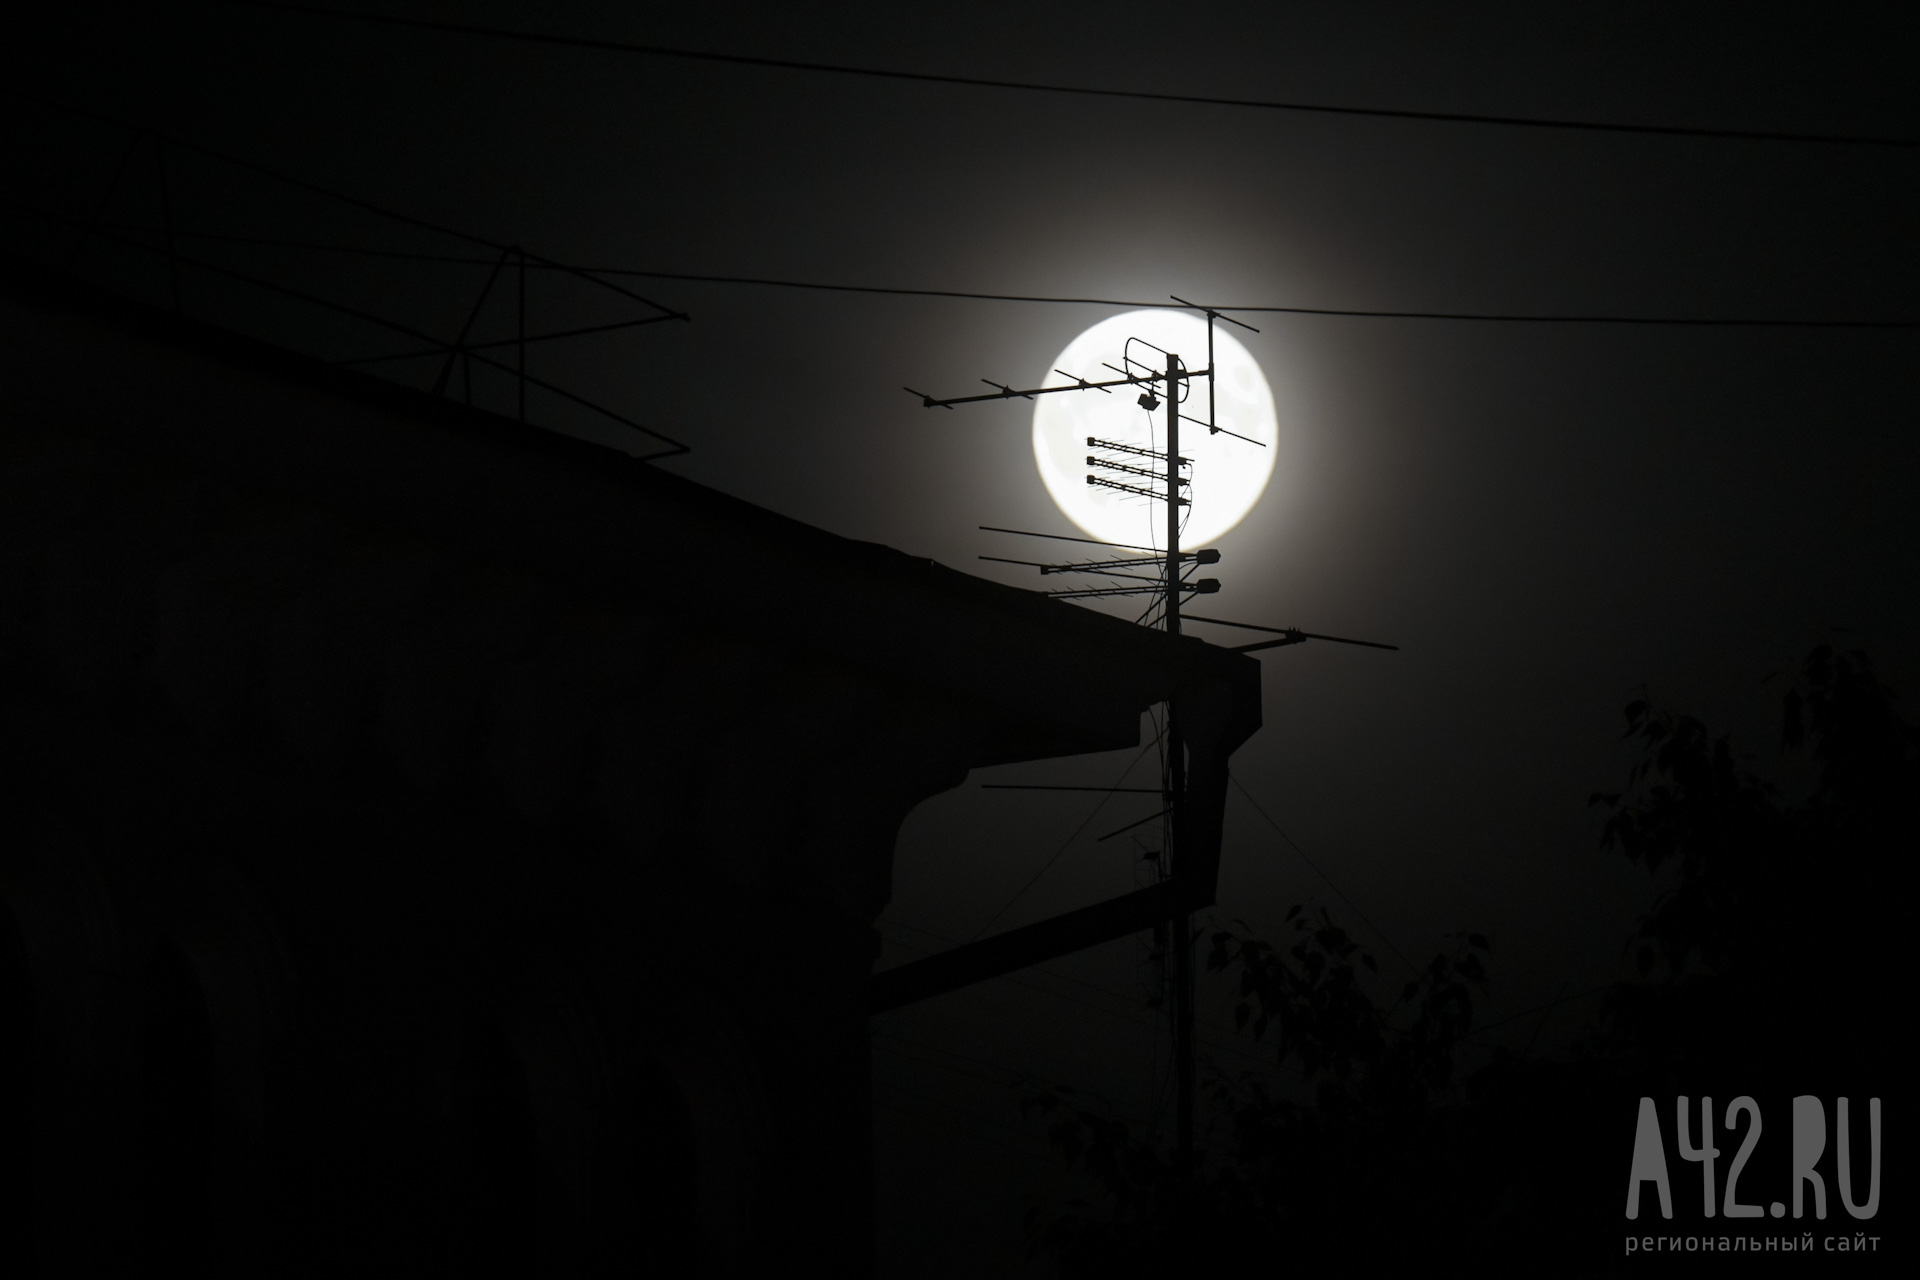 Светящийся объект возле Луны привлёк внимание кузбассовцев 